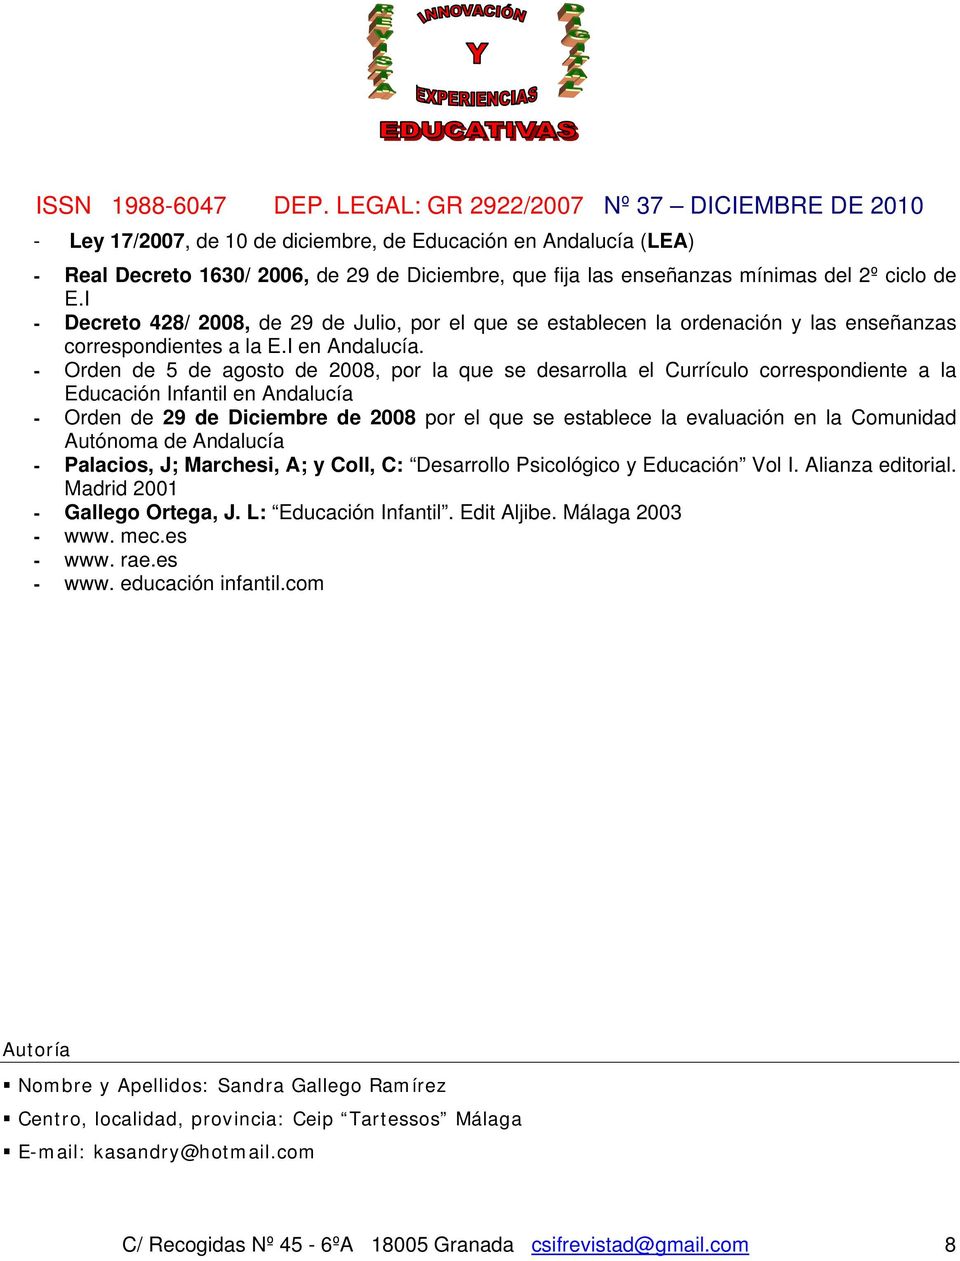 - Orden de 5 de agosto de 2008, por la que se desarrolla el Currículo correspondiente a la Educación Infantil en Andalucía - Orden de 29 de Diciembre de 2008 por el que se establece la evaluación en